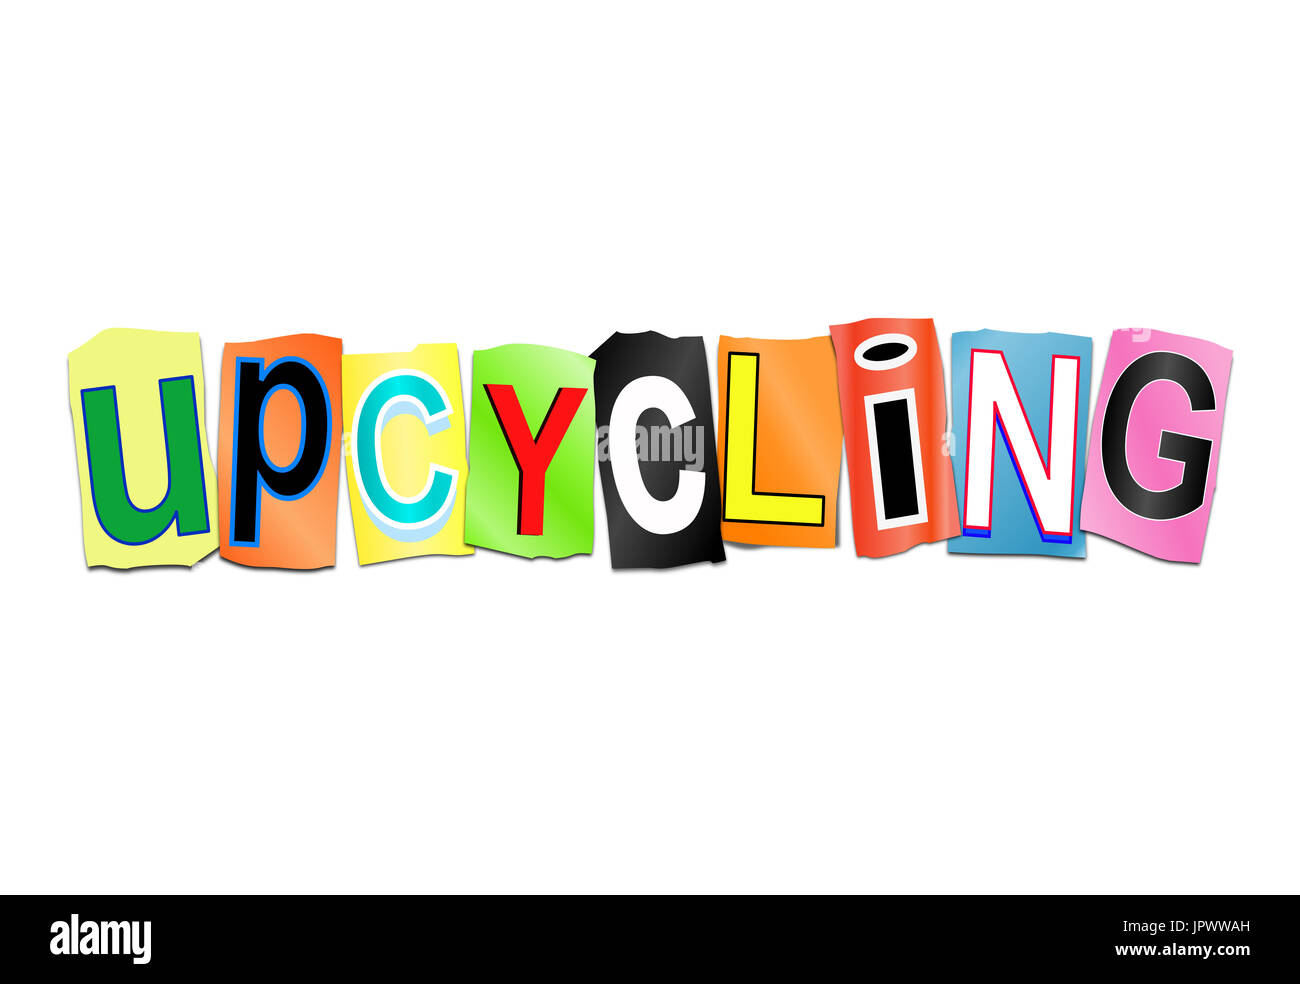 3D Abbildung zeigt eine Reihe von ausgeschnittenen gedruckte Buchstaben angeordnet, um das Wort Upcycling bilden. Stockfoto